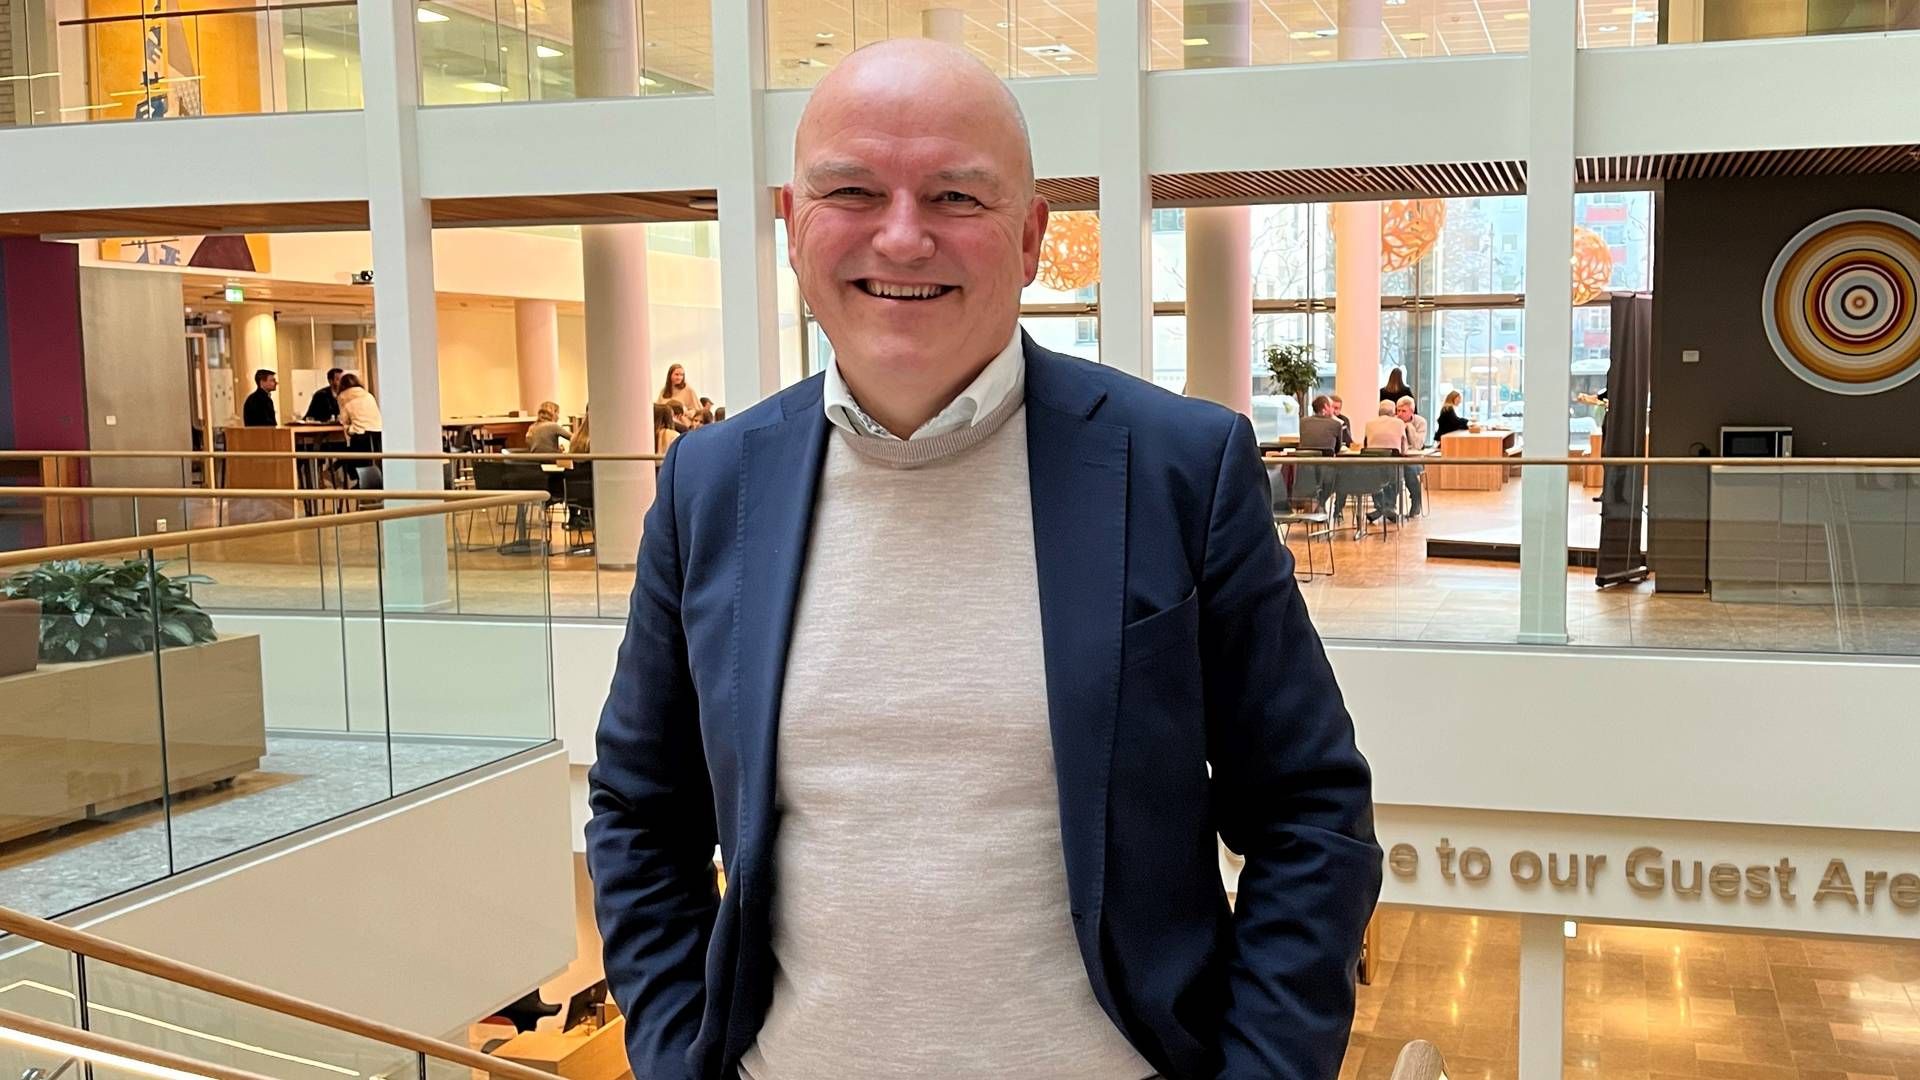 VENDER TILBAKE: Kolbjørn Giskeødegård har startet ny jobb i Nordea som direktør for akvakultur og sjømat. Dermed er han tilbake til sin arbeidsgiver i godt over 20 år.